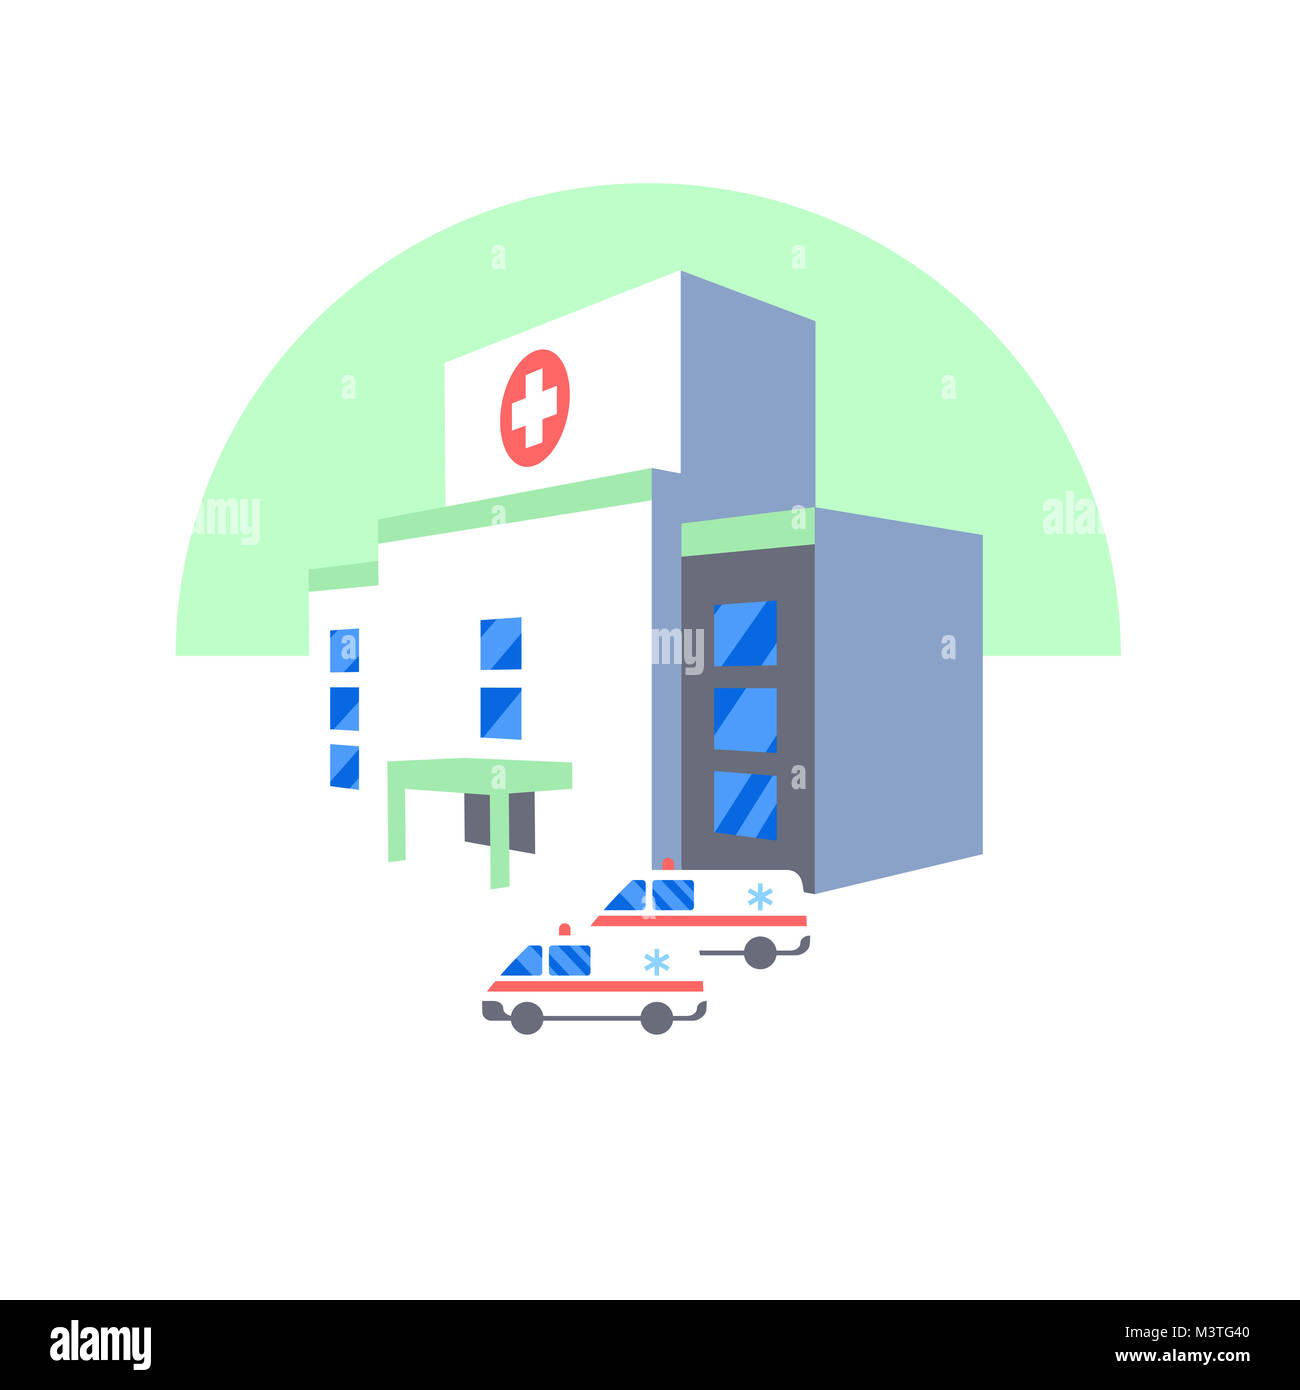 Krankenhaus Gebäude- und Rettungswagen Symbol. Medizinische Notfall flachbild Abbildung Stockfoto